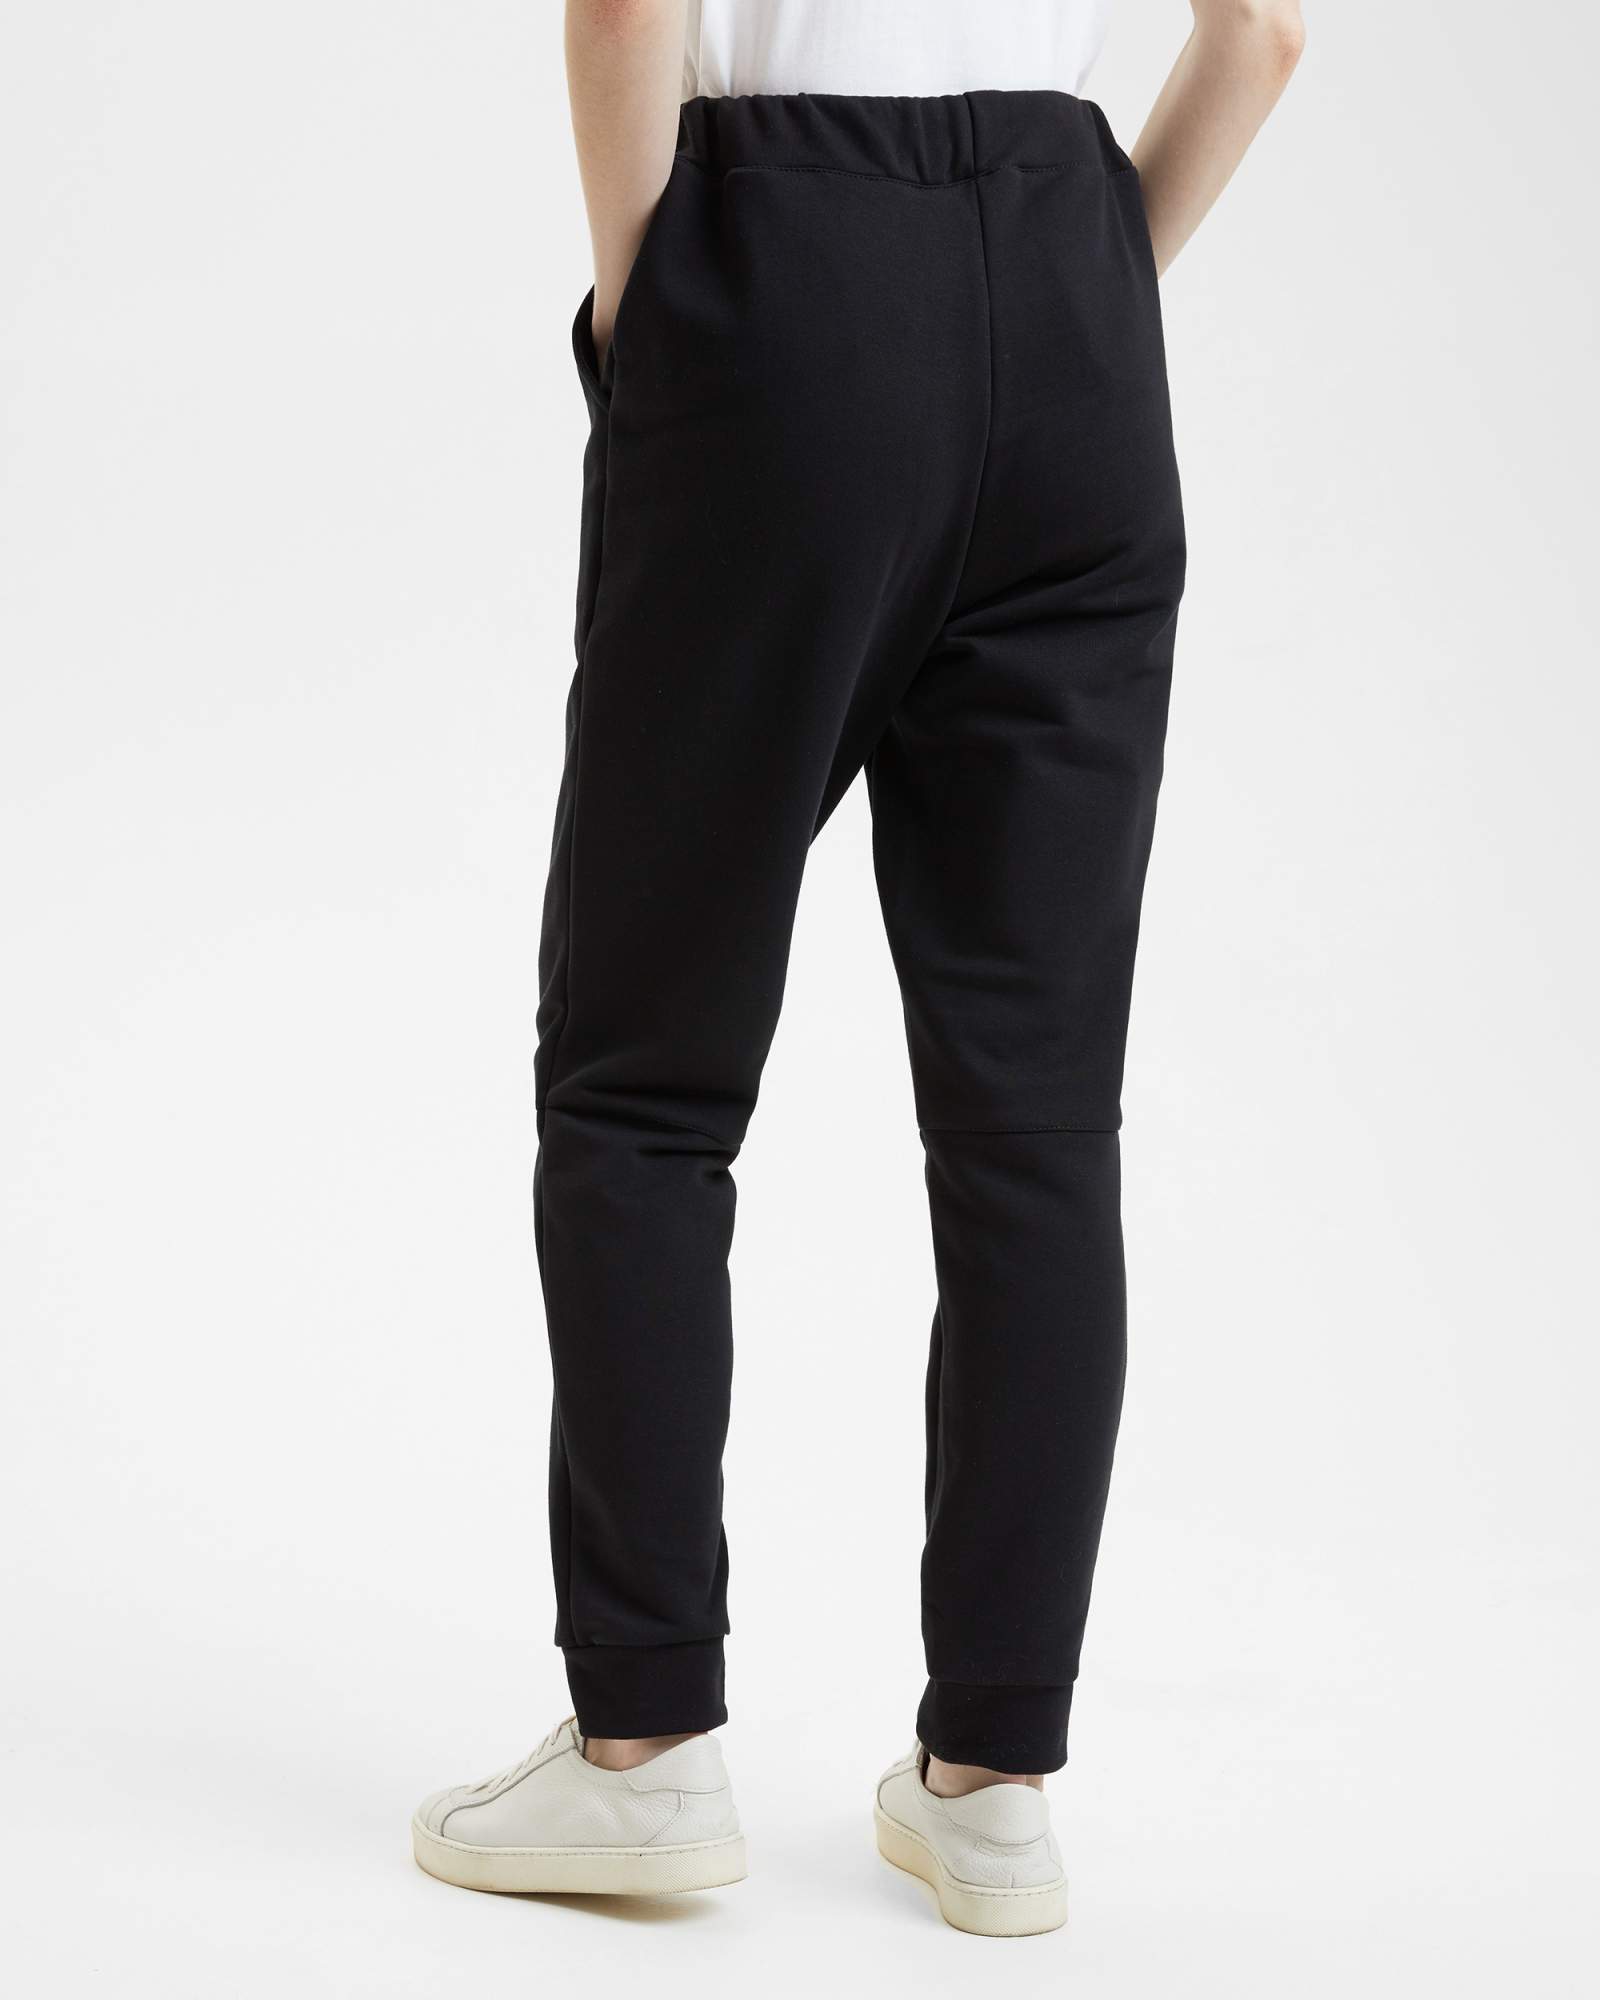 Спортивные брюки женские BARMARISKA с шевроном черные 40-42 RU